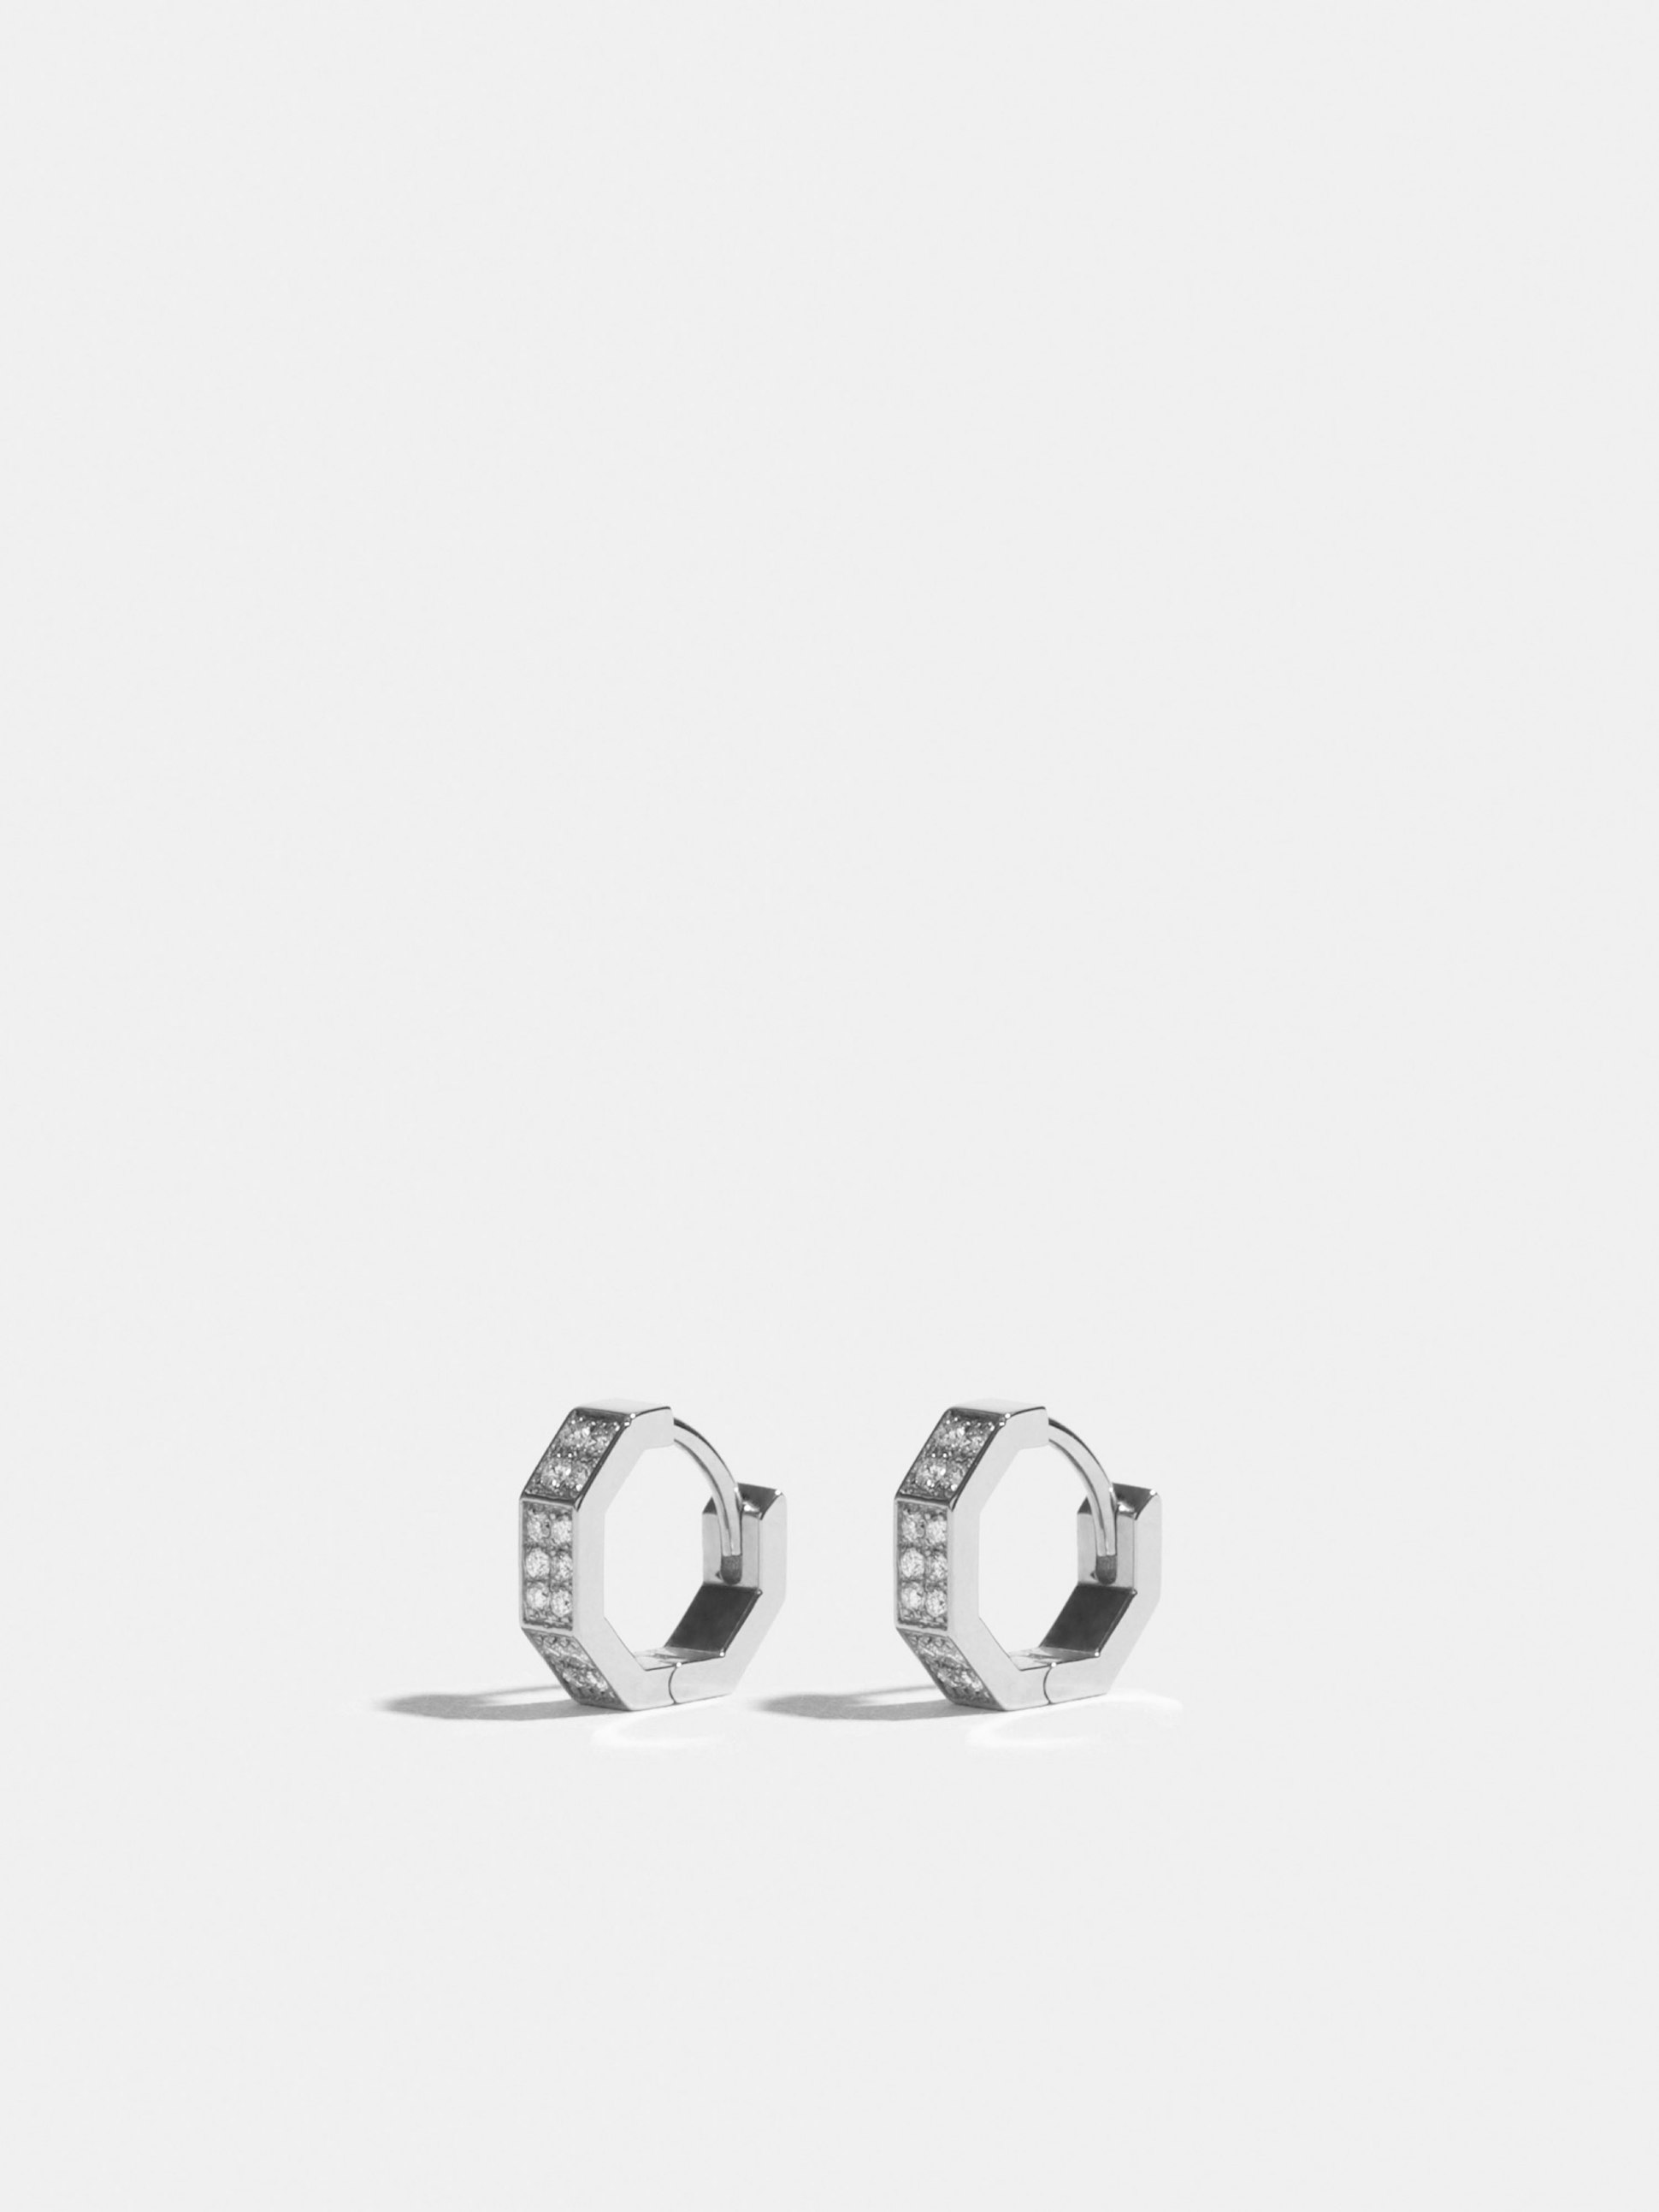 Boucles d'oreilles Octogone en Or blanc éthique 18 carats certifié Fairmined et pavées de diamants de synthèse.